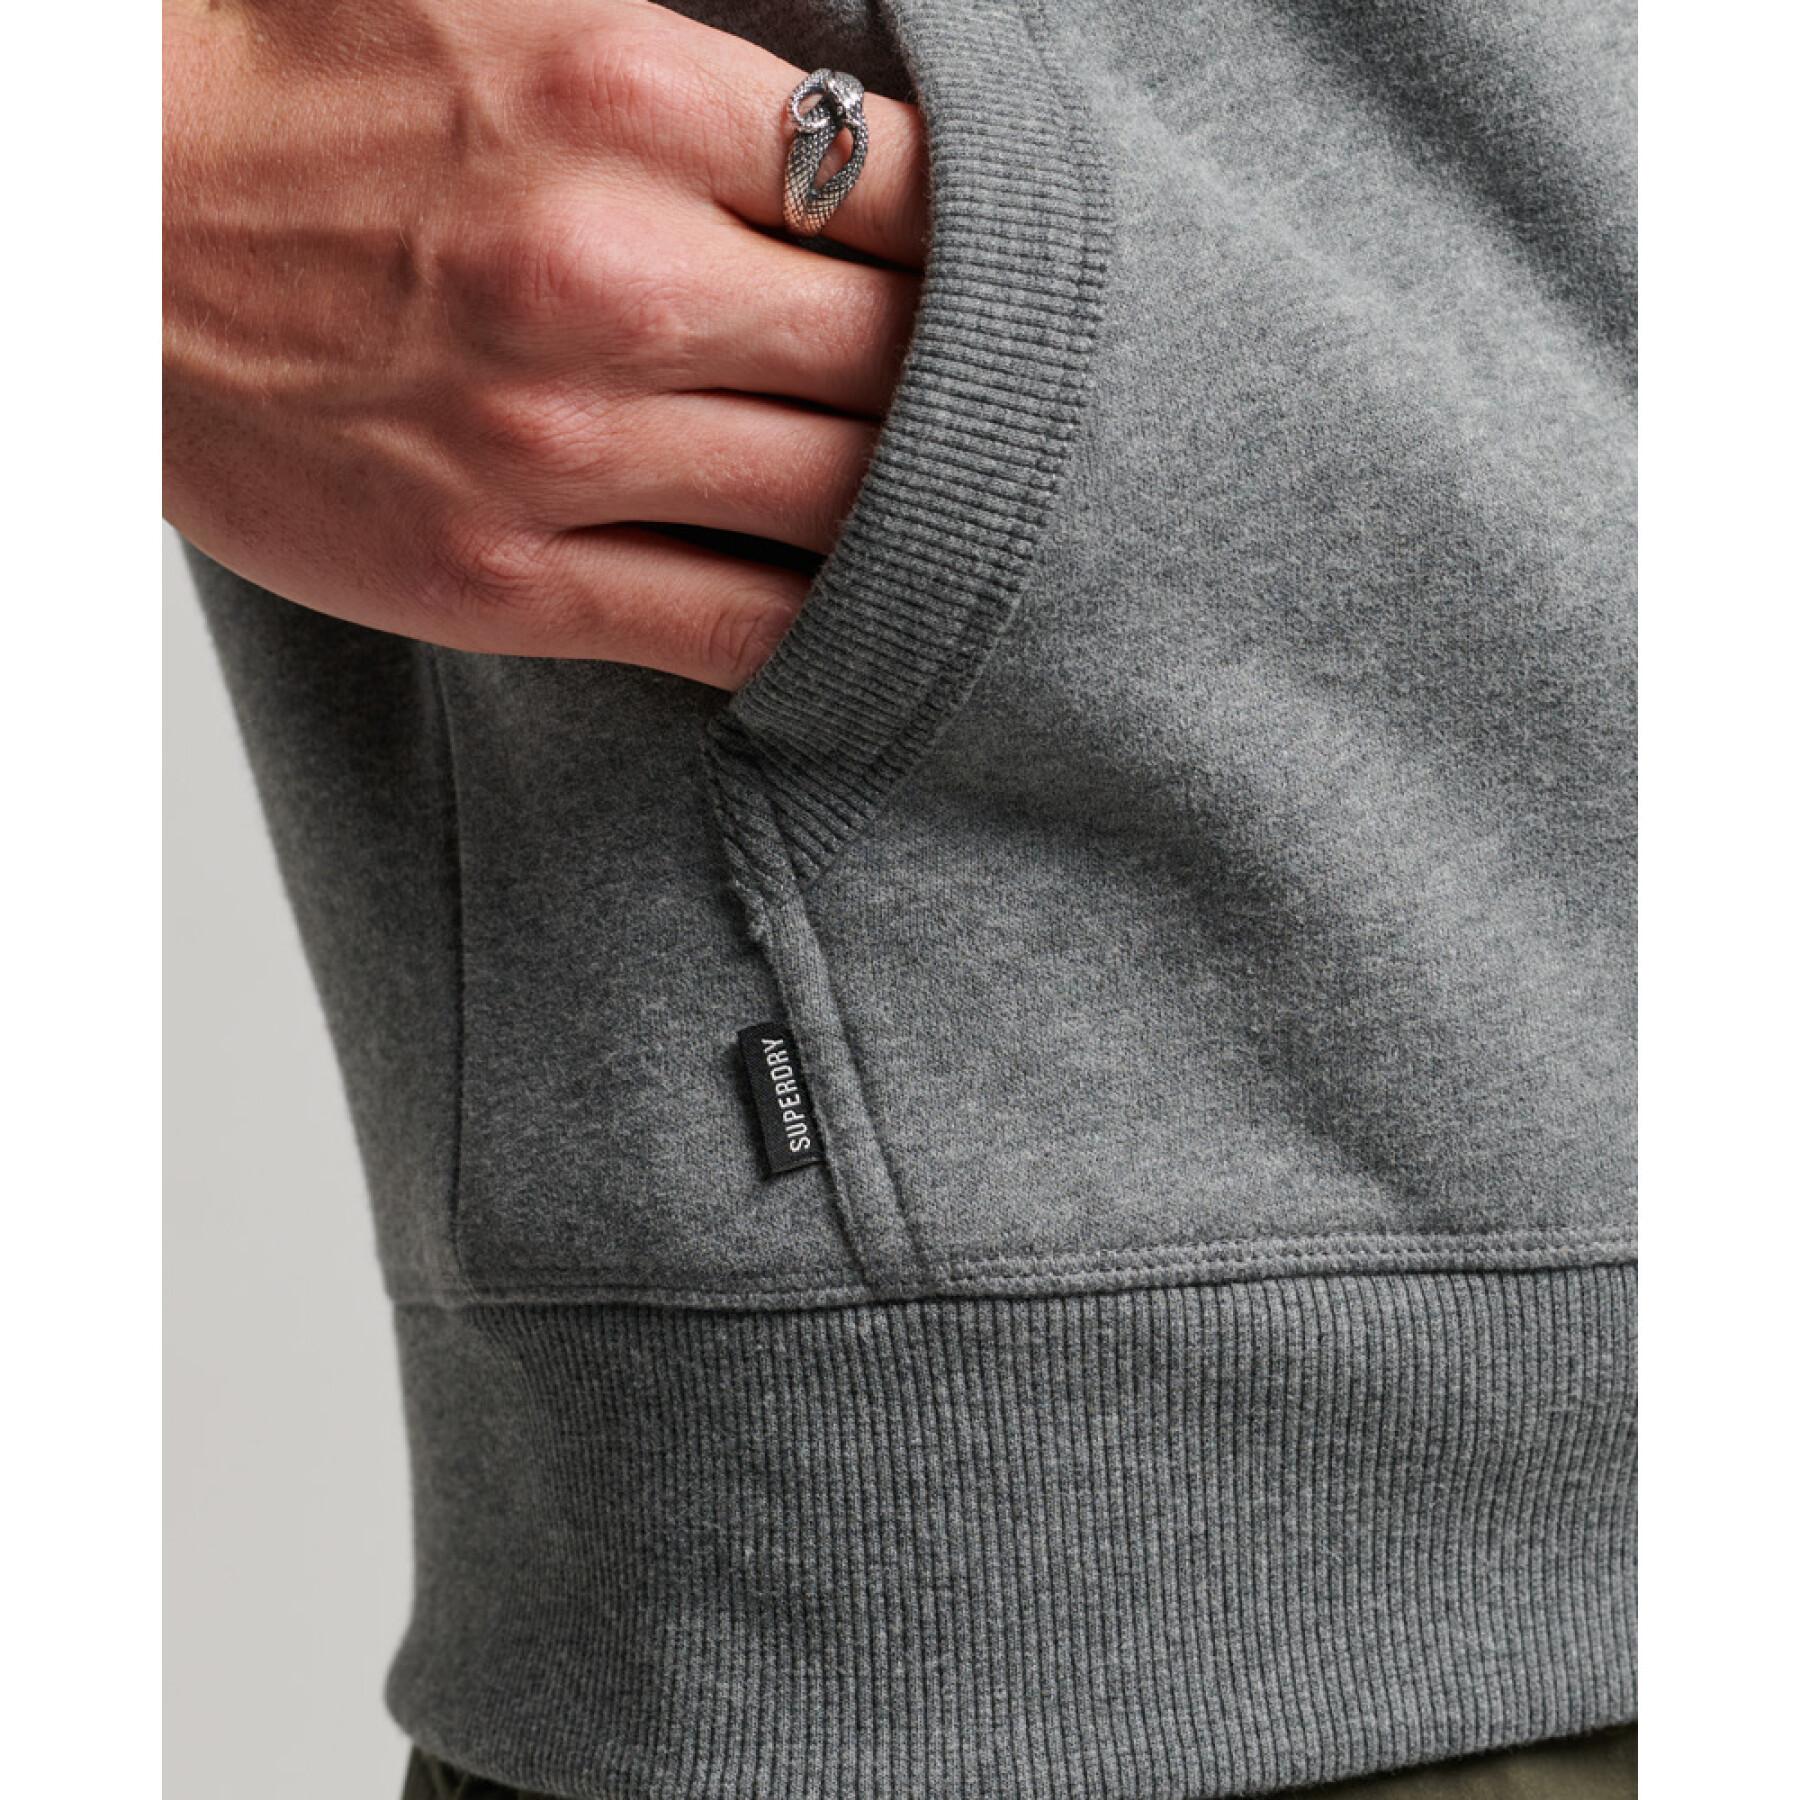 Sweatshirt à capuche zippé et brodé Superdry Vintage Logo